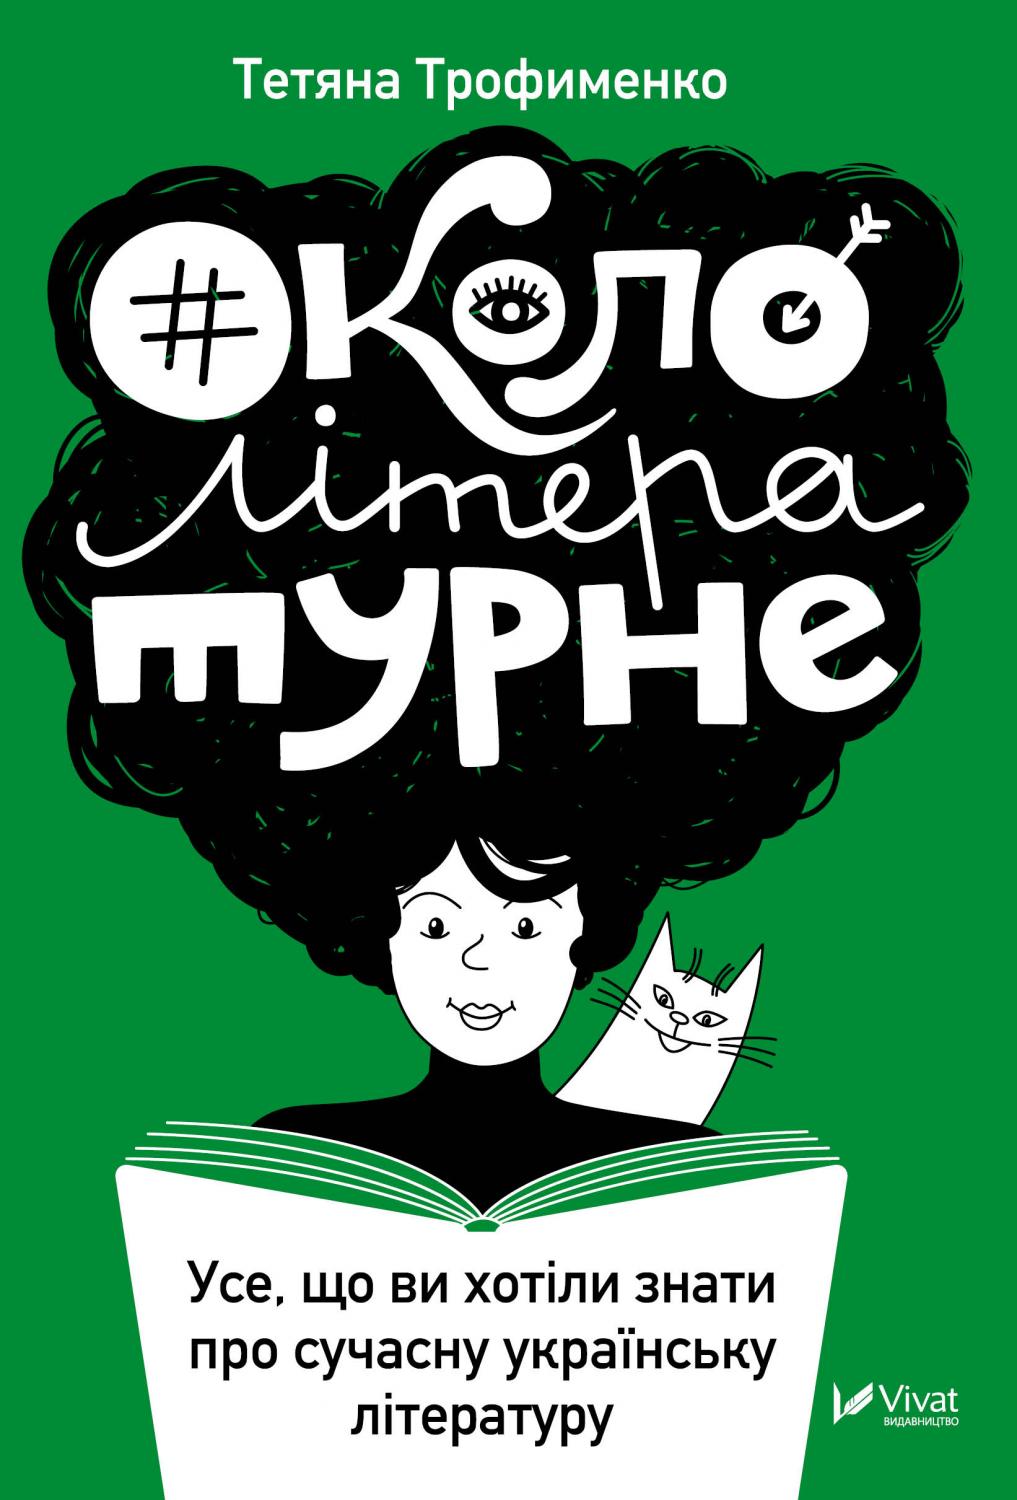 Окололітературне: усе що ви хотіли знати про сучасну українську літературу. Електронна книжка